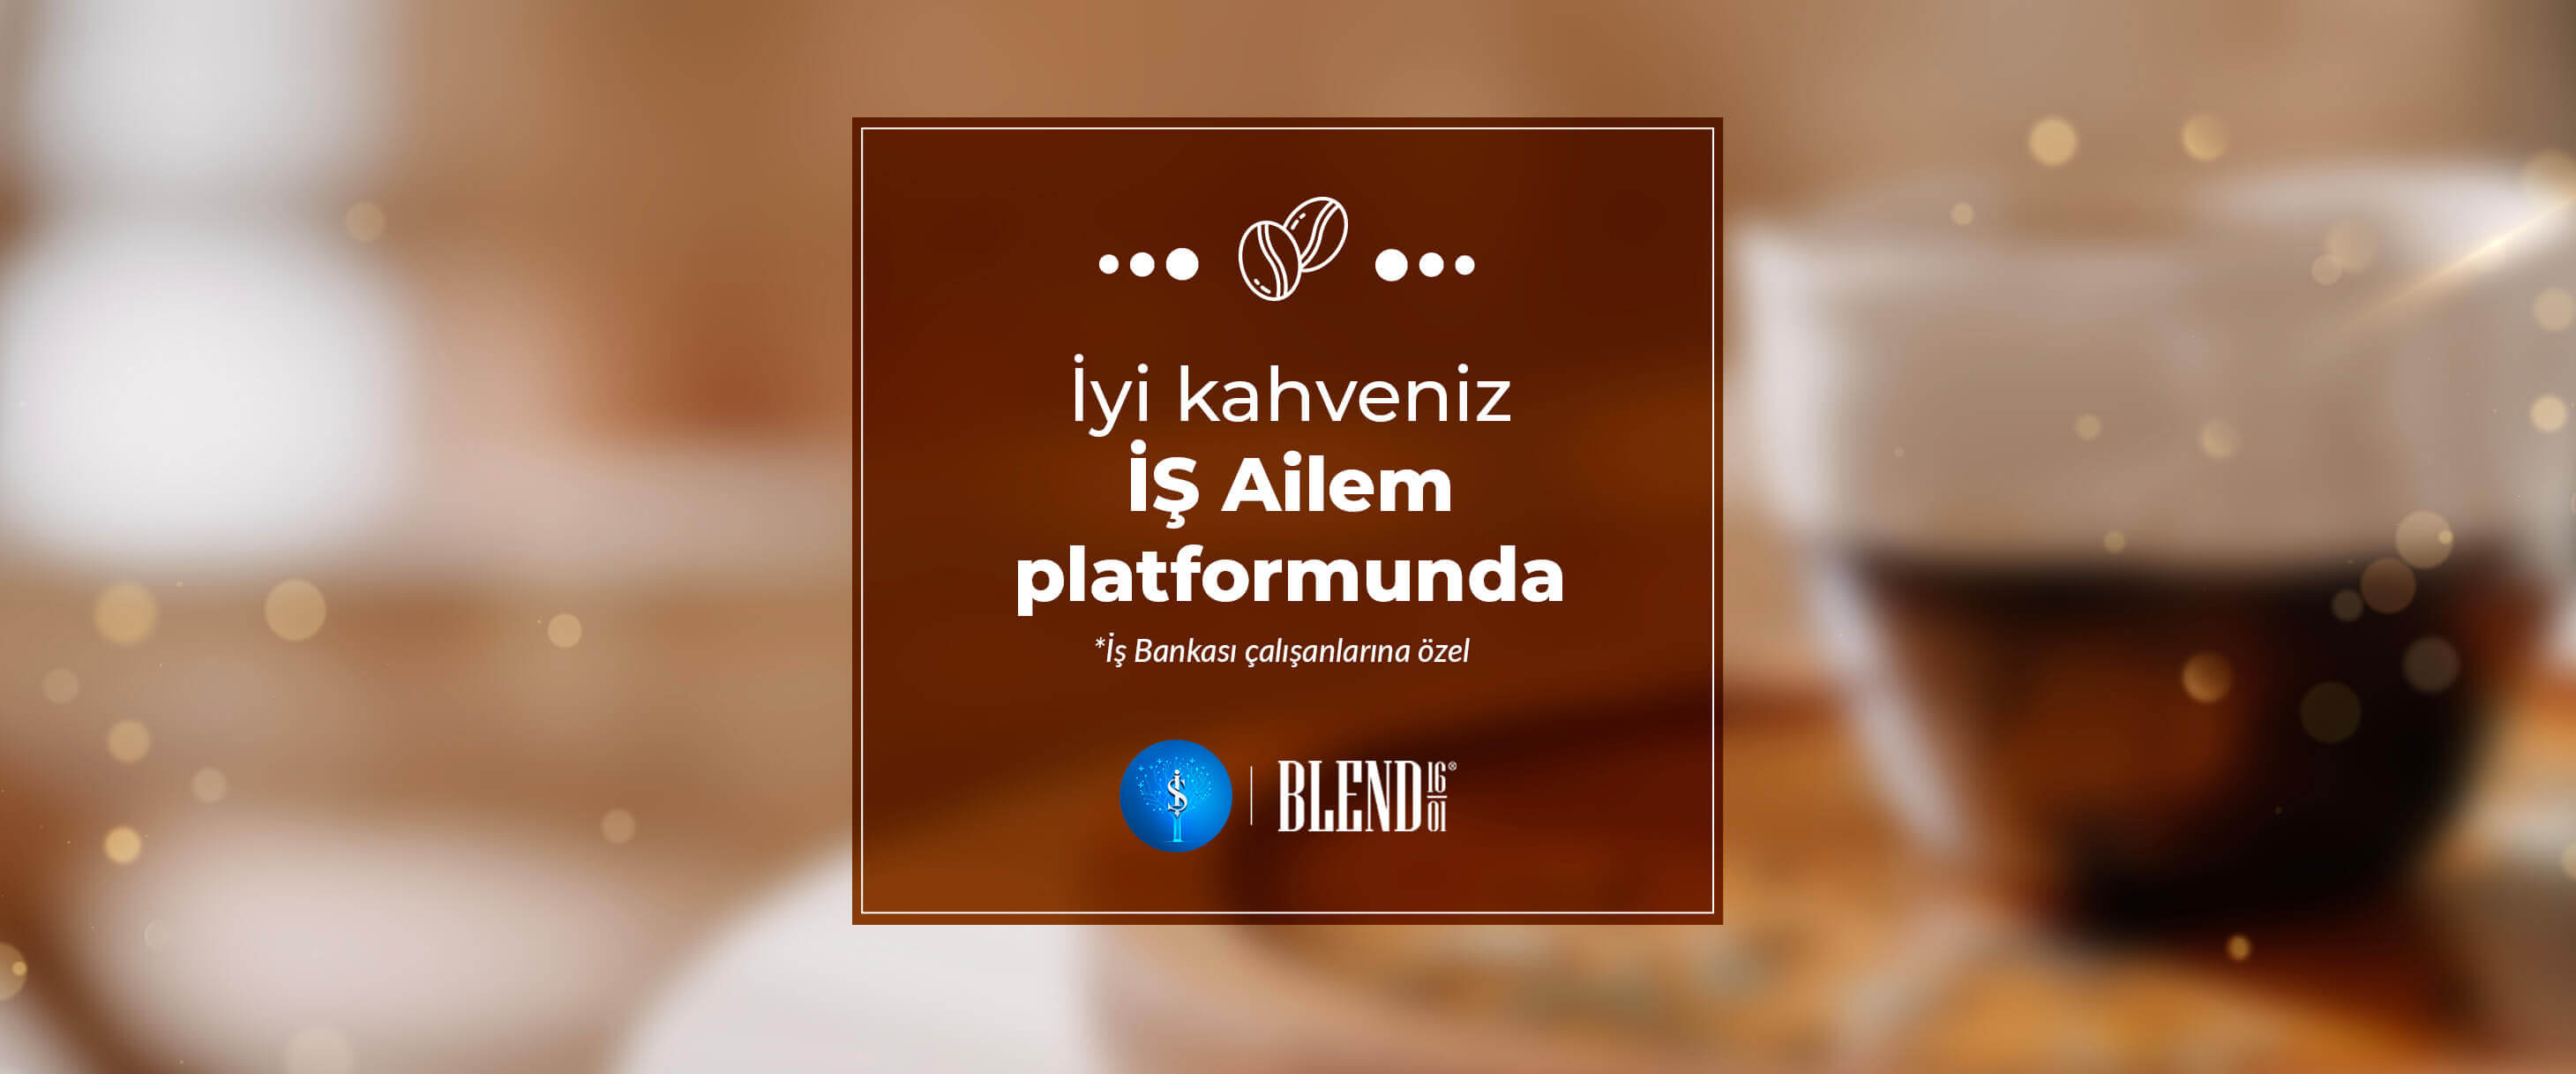 İyi kahveniz İŞ Ailem platformunda blend1601.com